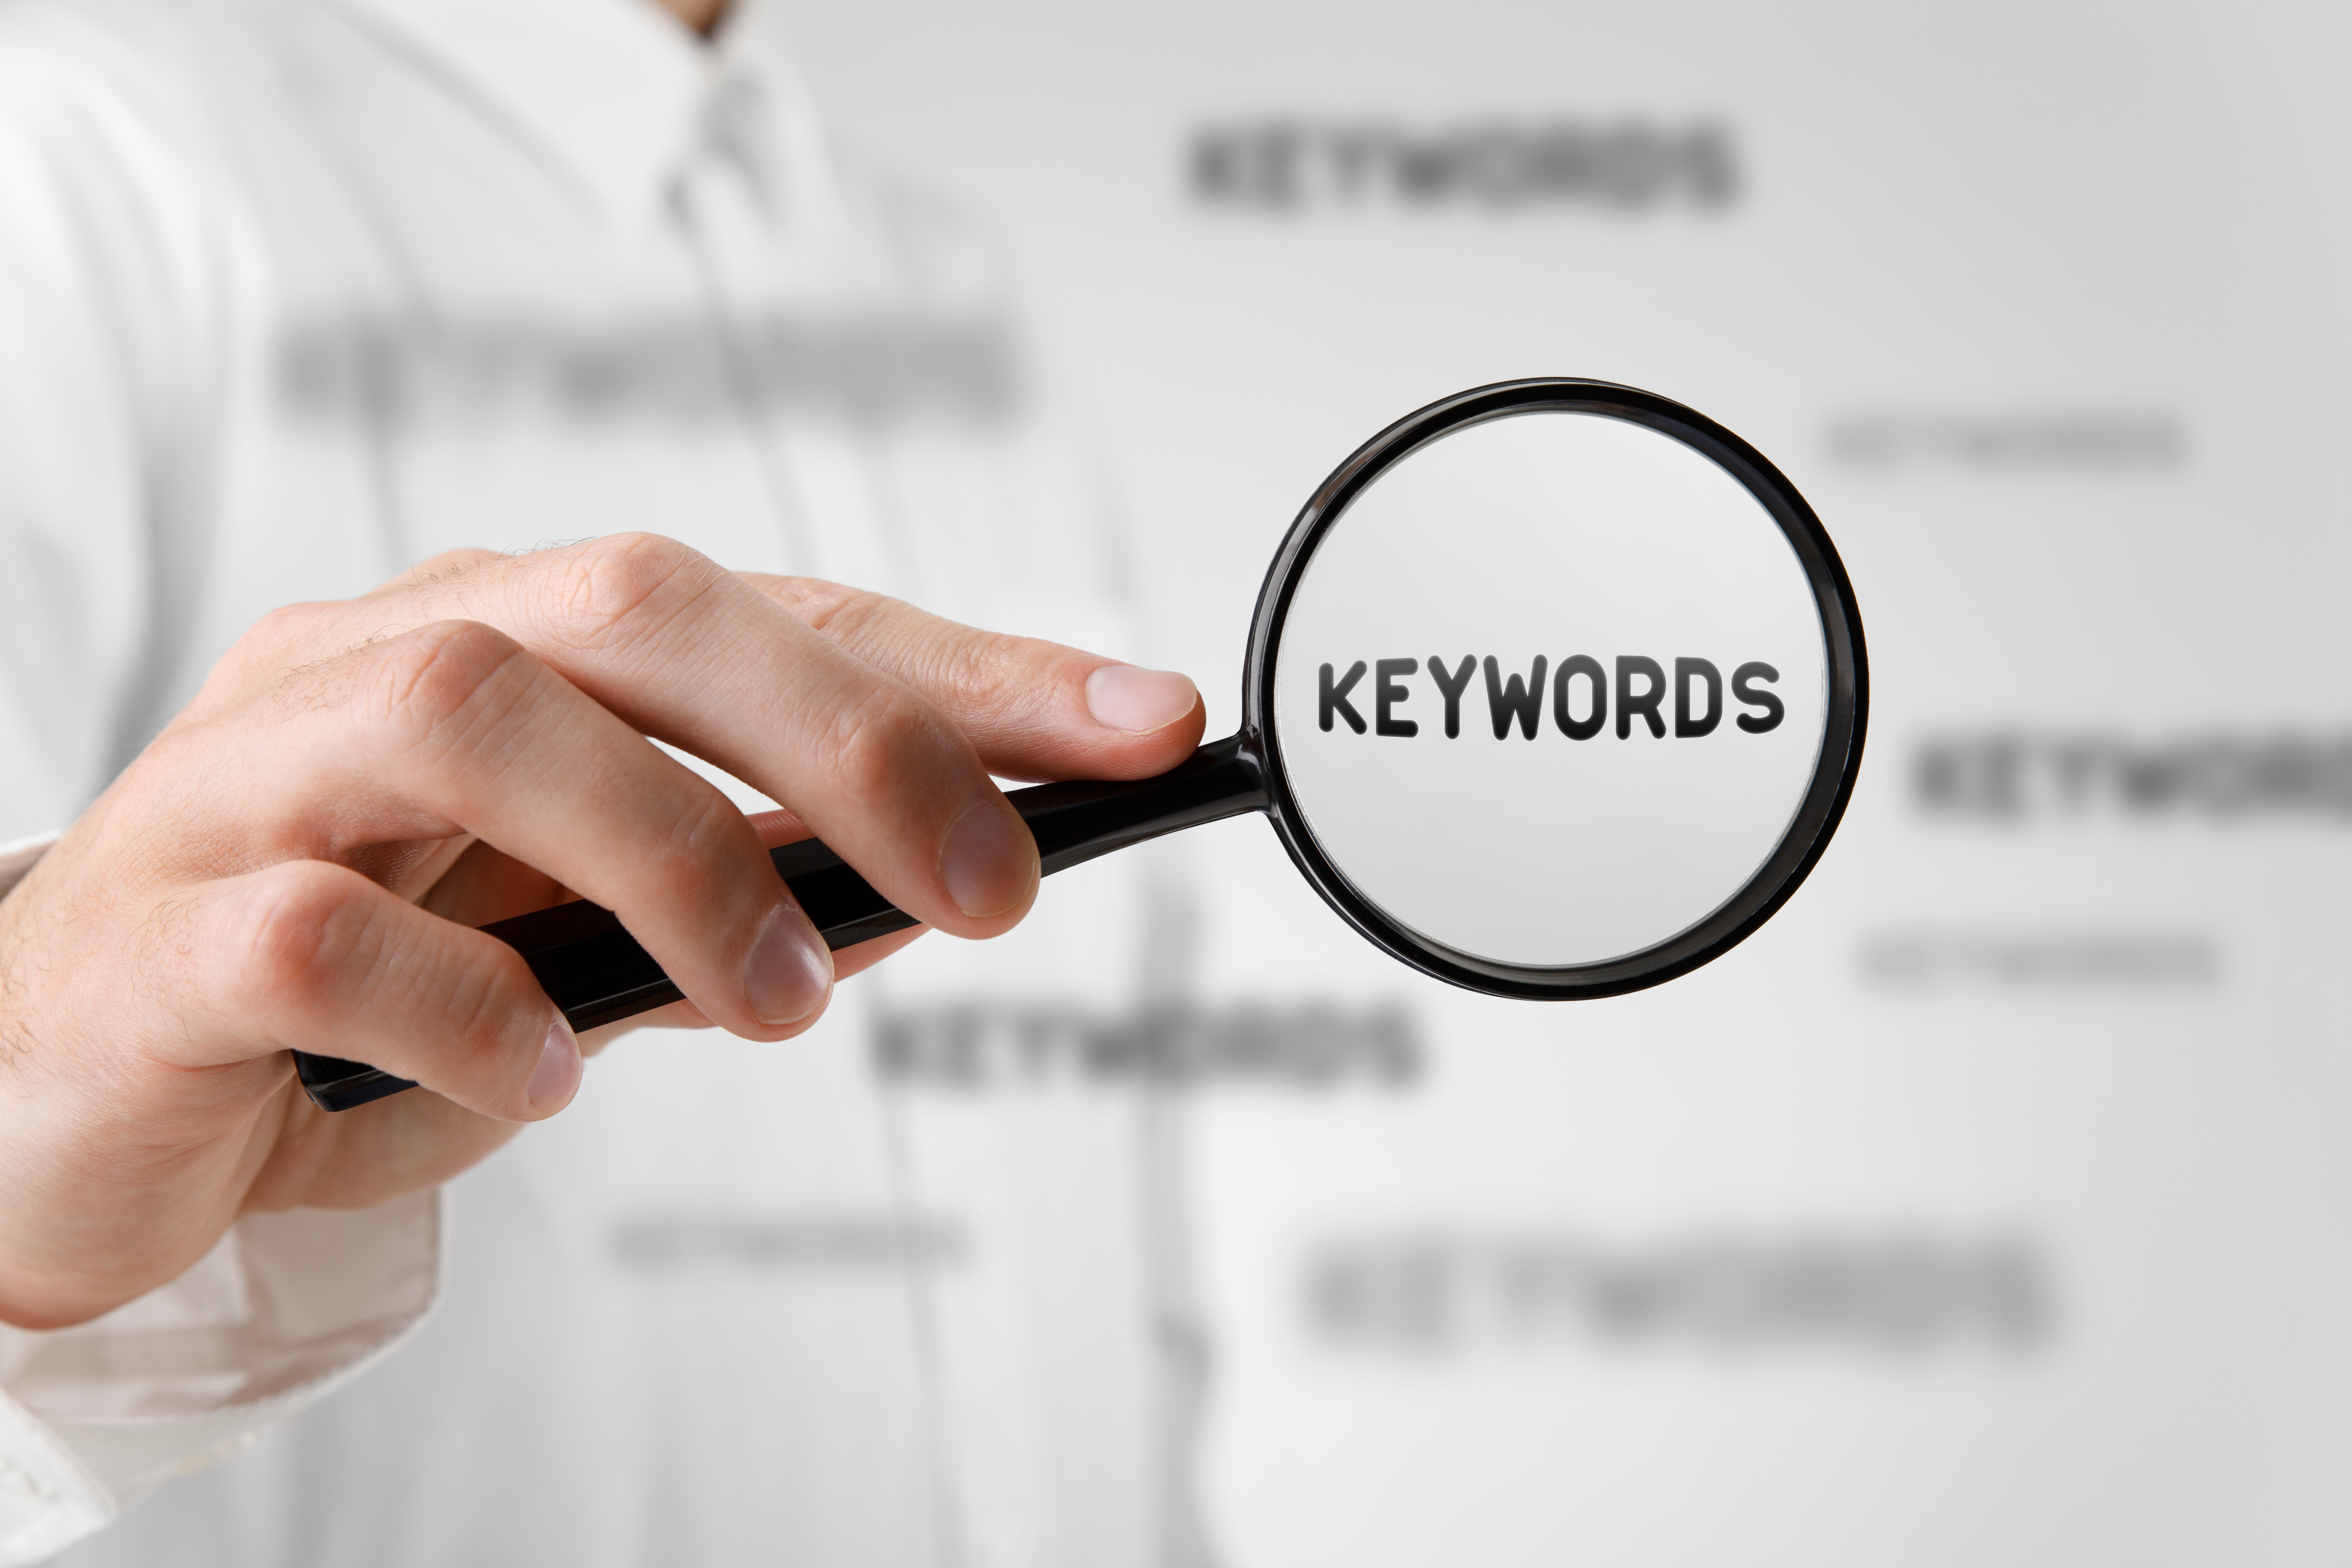 Keywords: a translation practice for digital marketing